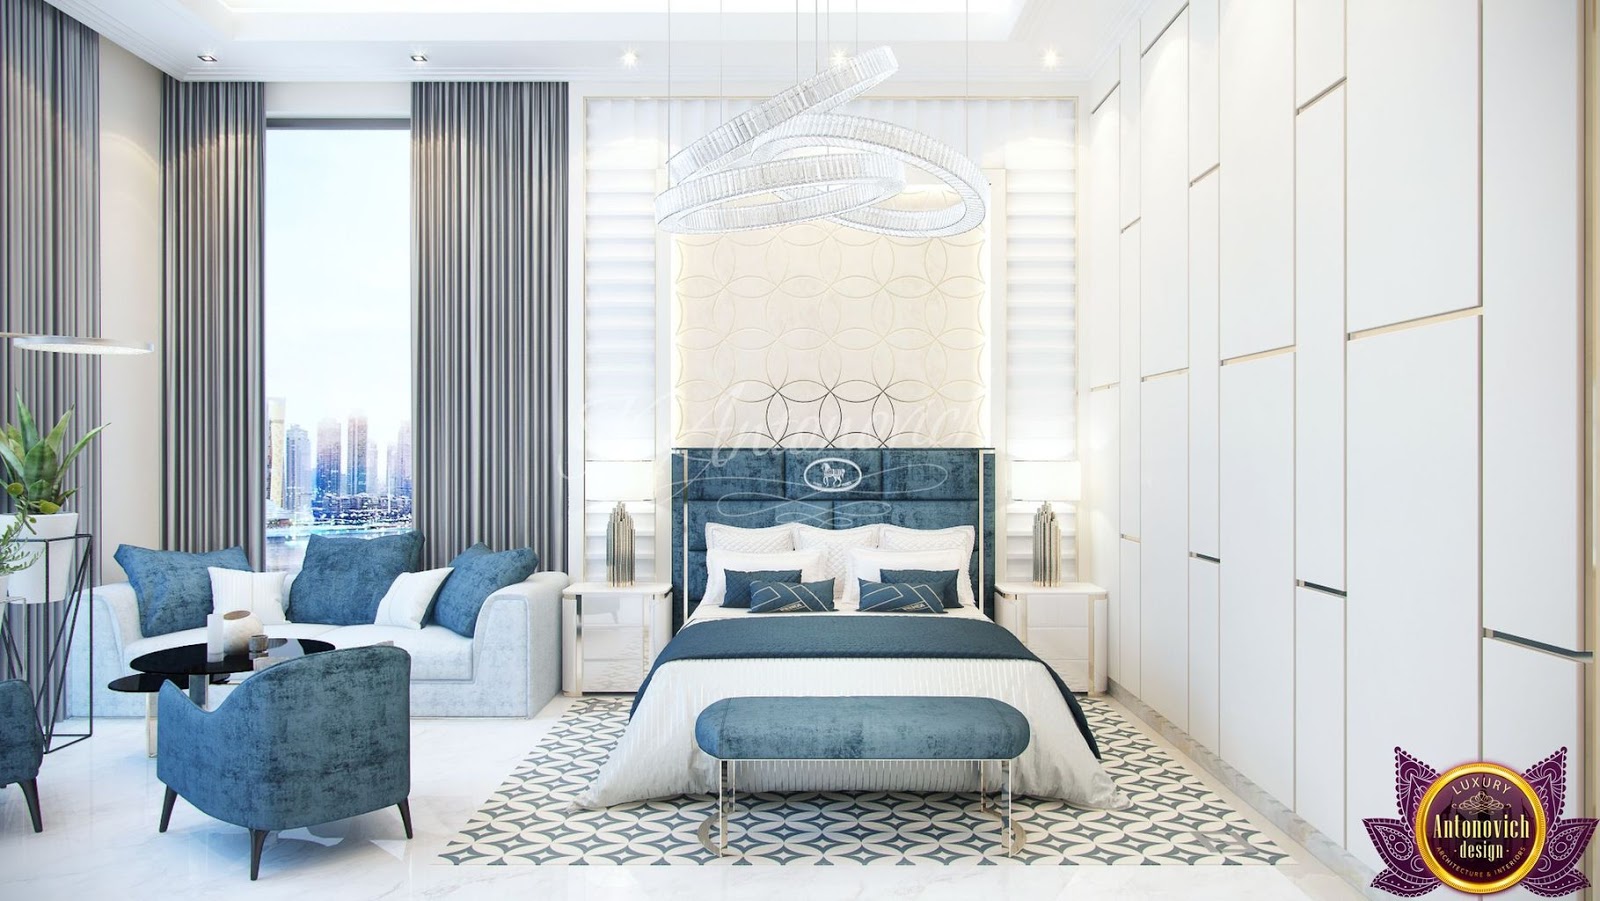 Luxury Antonovich Design Uae The Most Beautiful Bedrooms Interiors Of